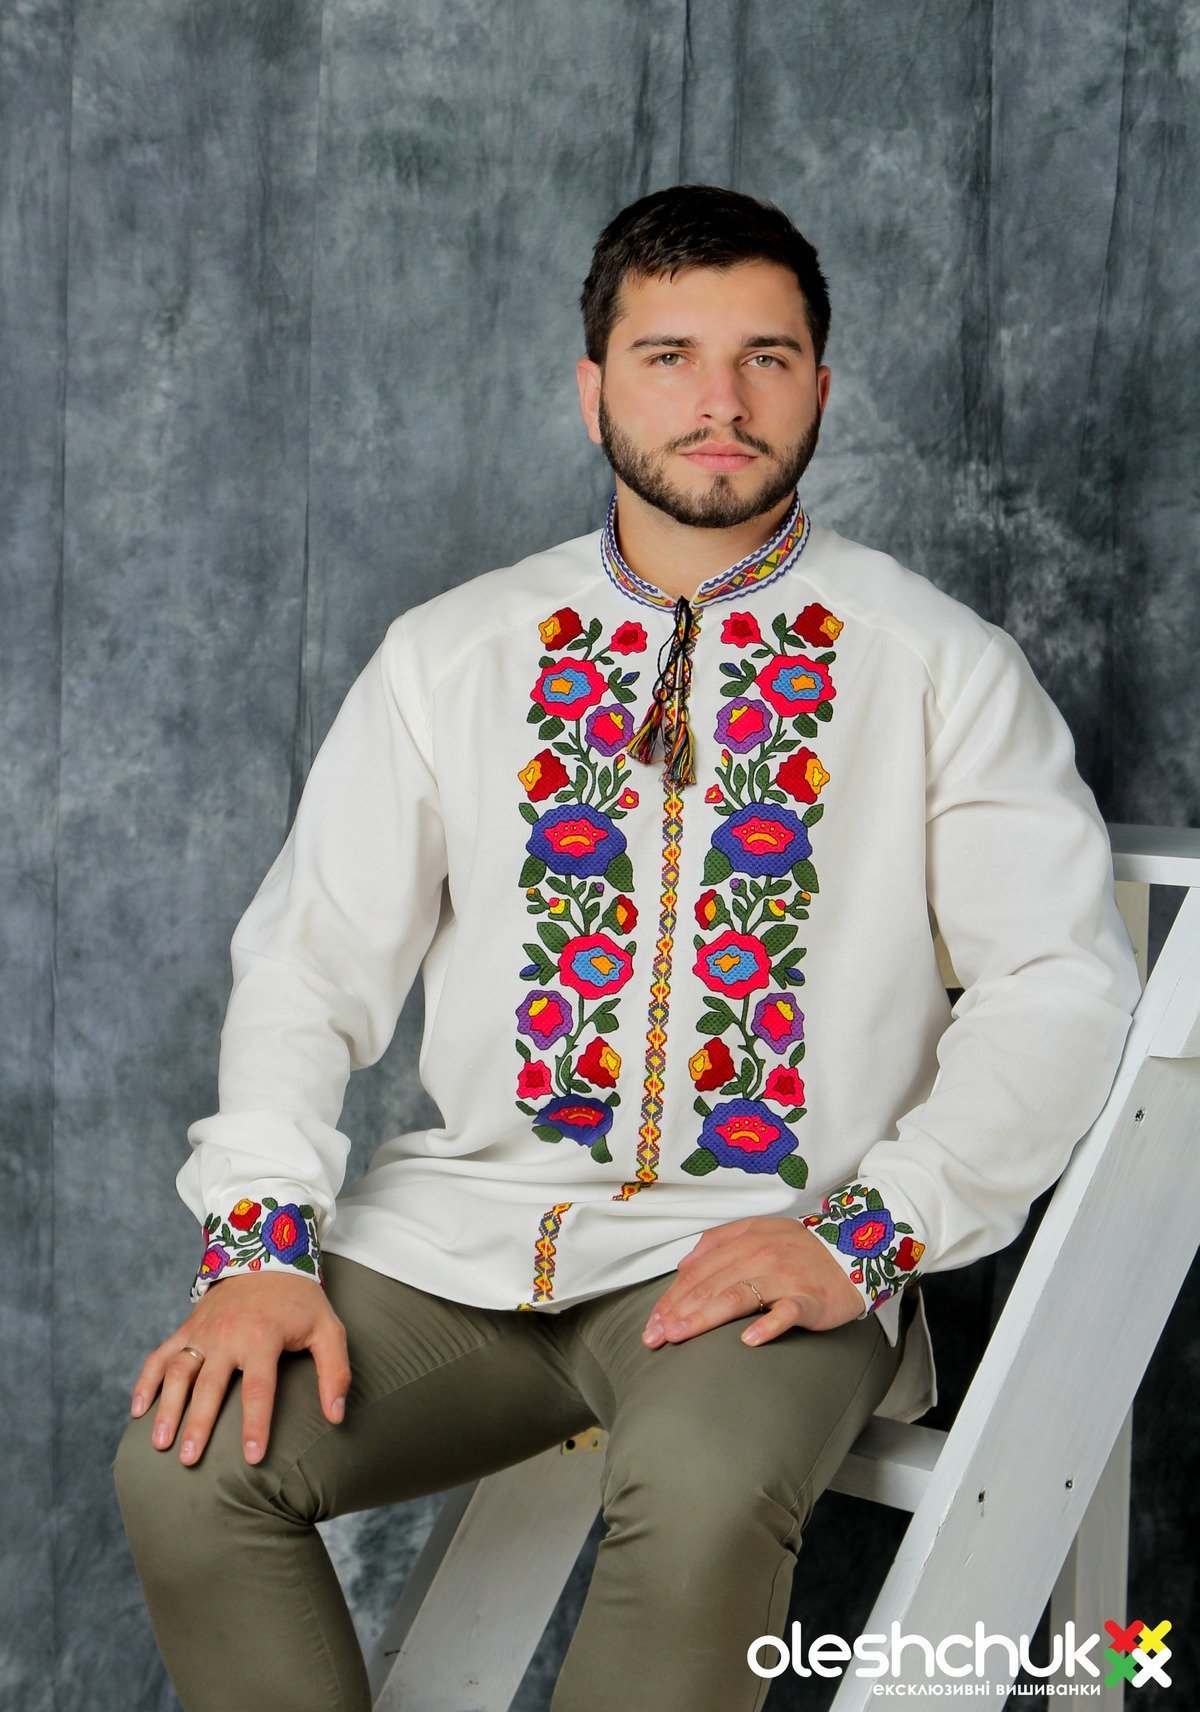 Мужья украинцы. Украинская рубаха мужская. Украинские мужчины. Вышиванка украинская мужская. Мужчина в вышиванке.